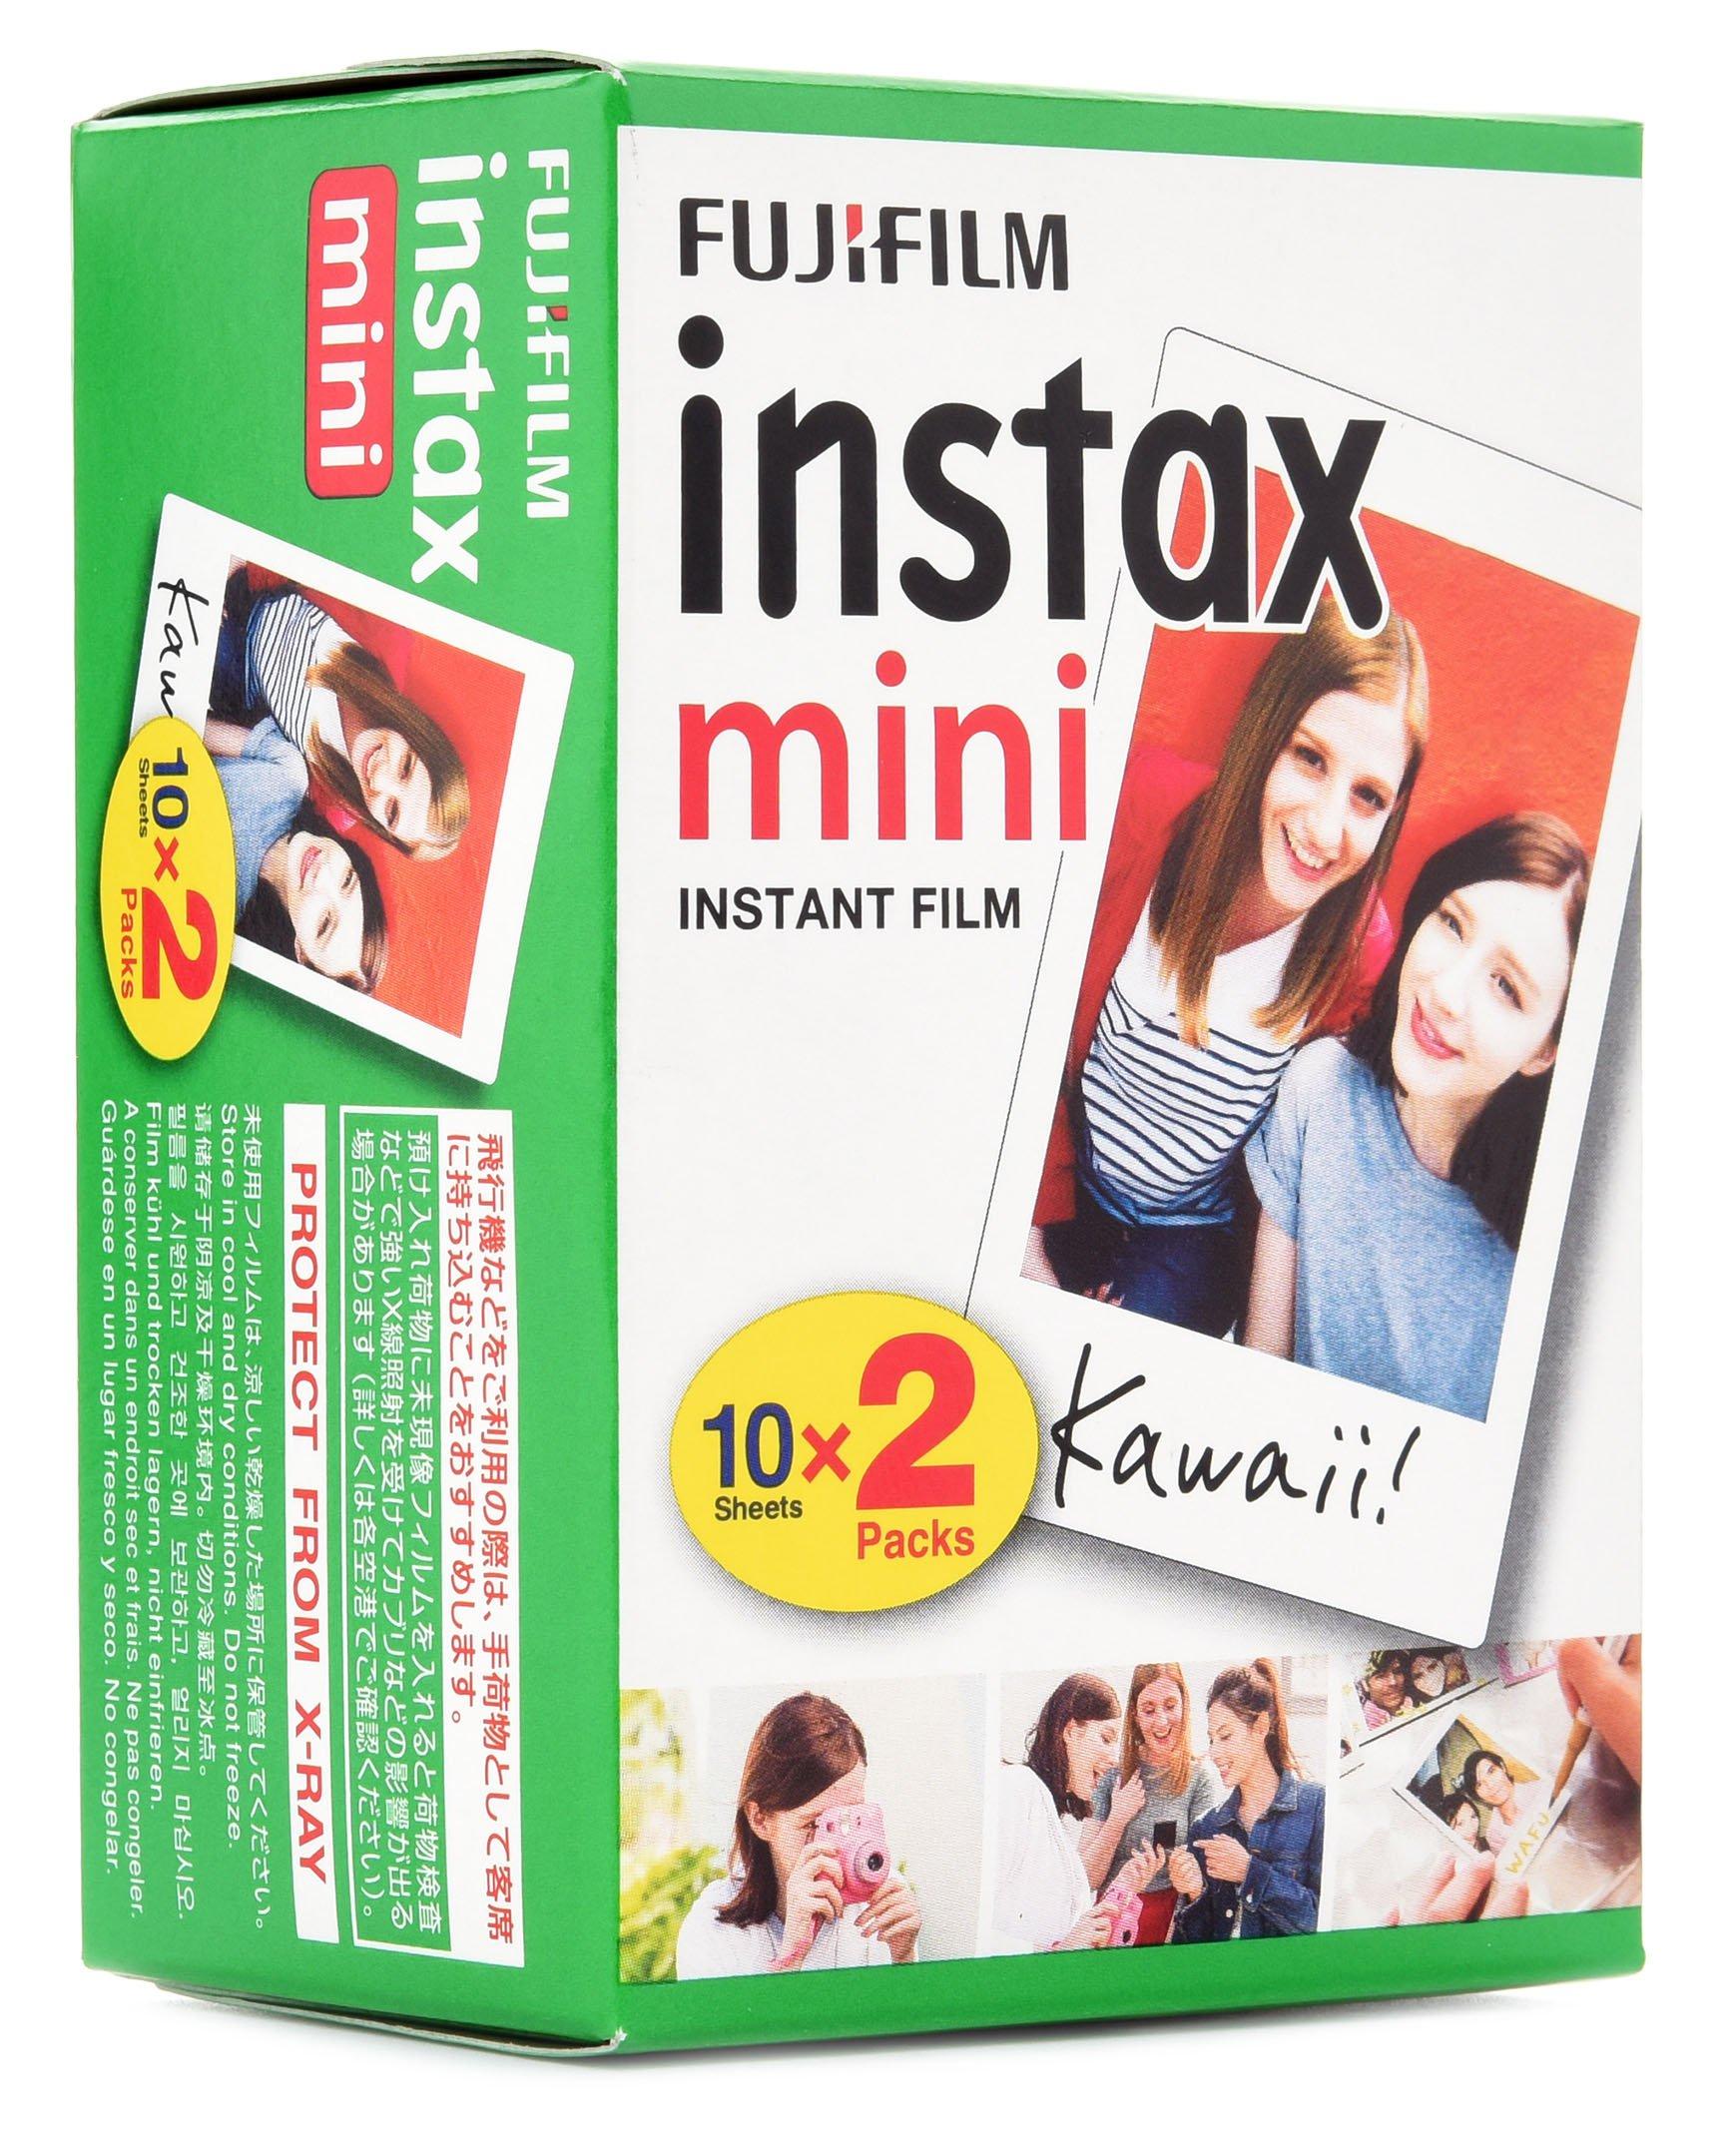 Fujifilm - Film instantané Instax Mini, paq./2